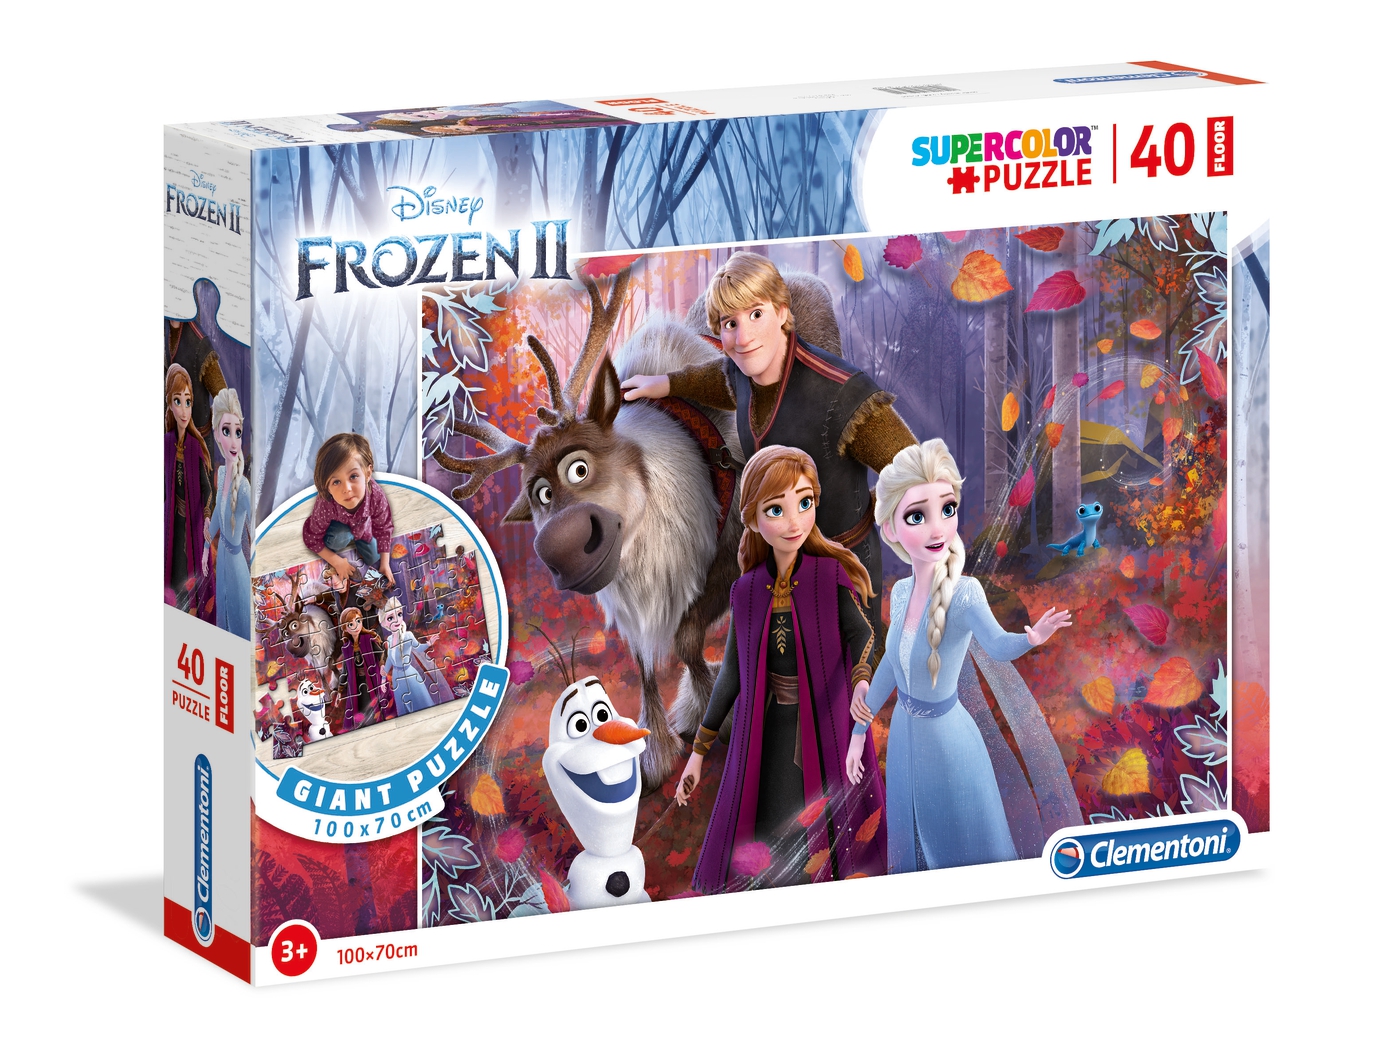 opslaan Vol Afzonderlijk Disney Frozen 2 - 40 el. - Supercolor Puzzle - Clementoni